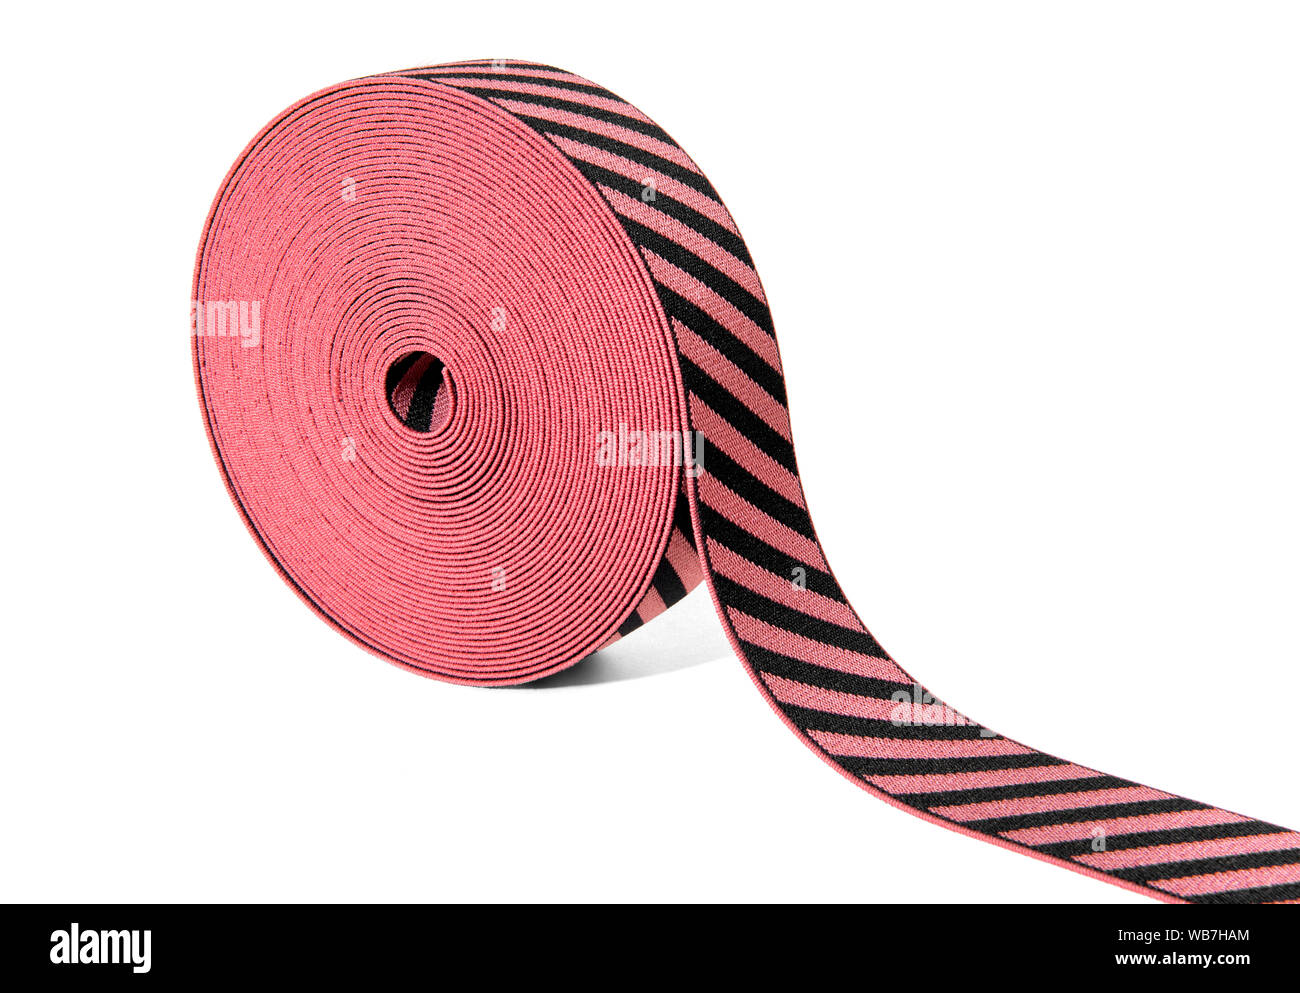 Rolle der dekorativen elastischen Band in Rot und Schwarz mit wechselnden diagonale Streifen in einem Winkel auf weißem mit Kopie Raum angezeigt. Stockfoto